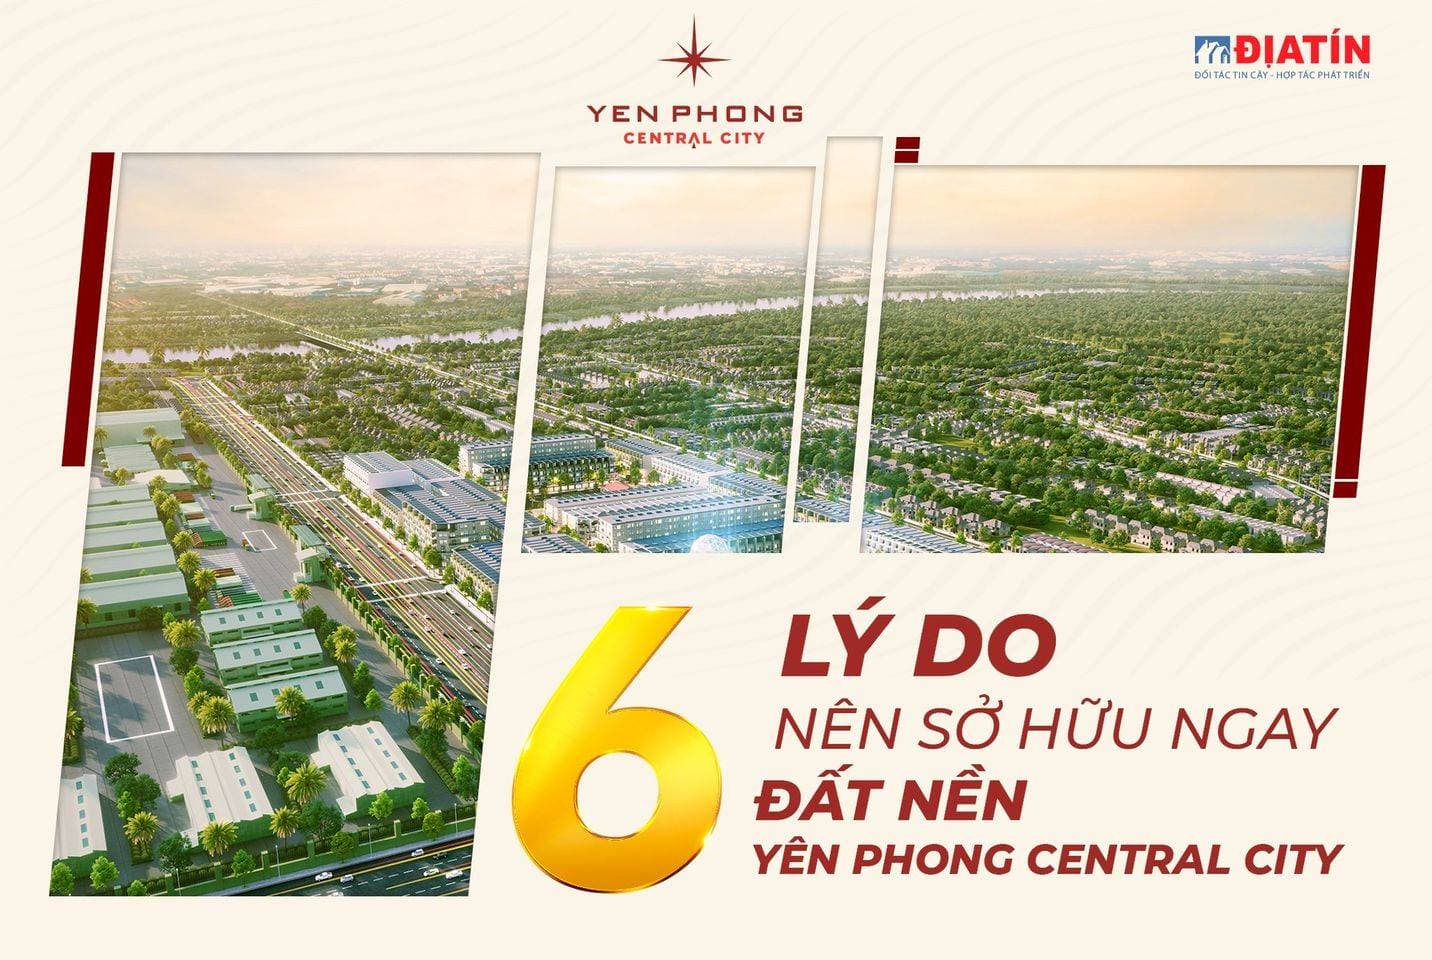 6 lý do nên sở hữu ngay đất nền Yên Phong Central City